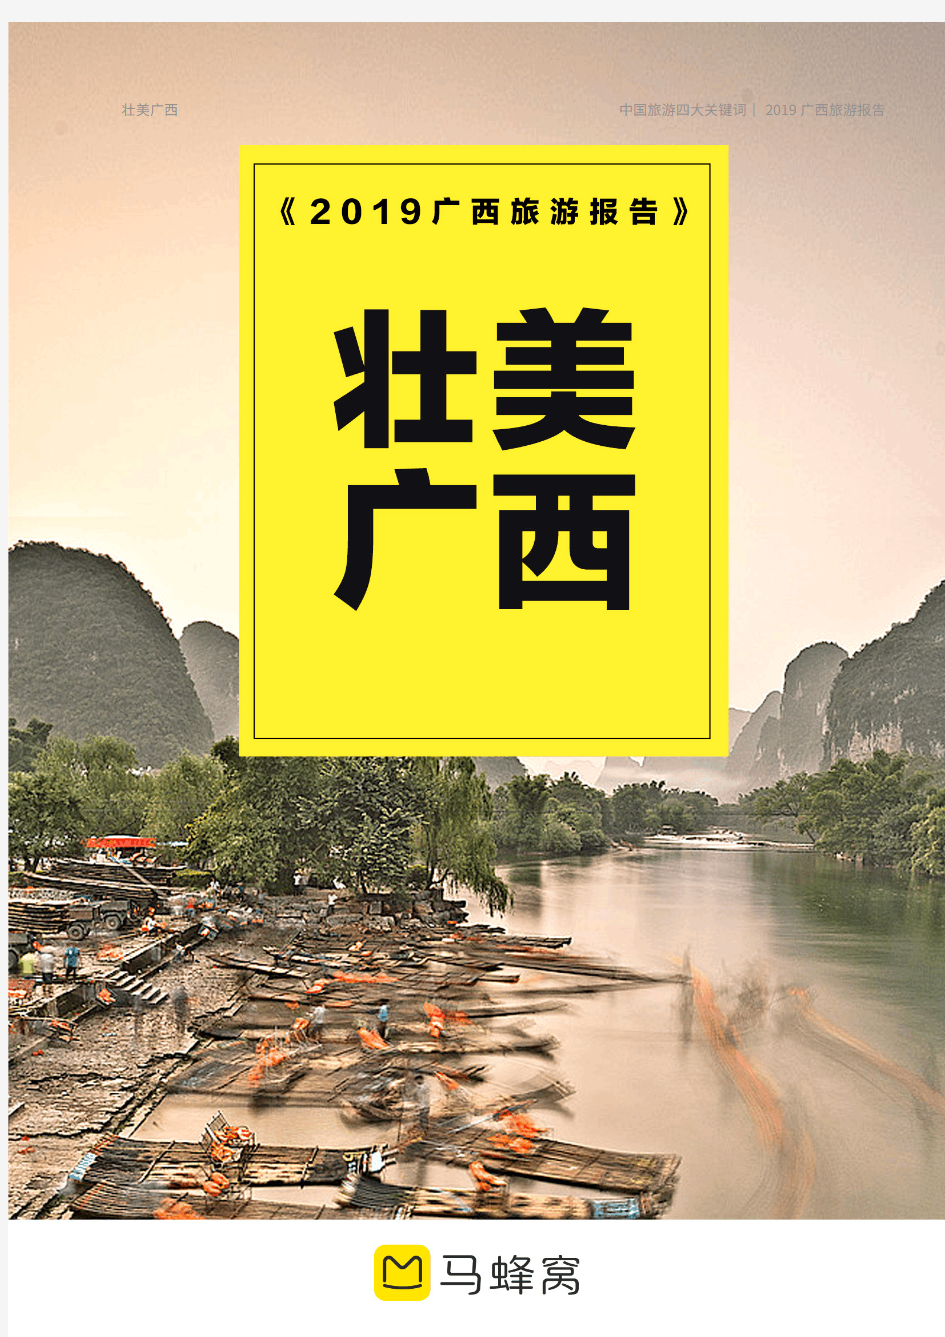 马蜂窝旅游网《2019年广西旅游市场分析报告》